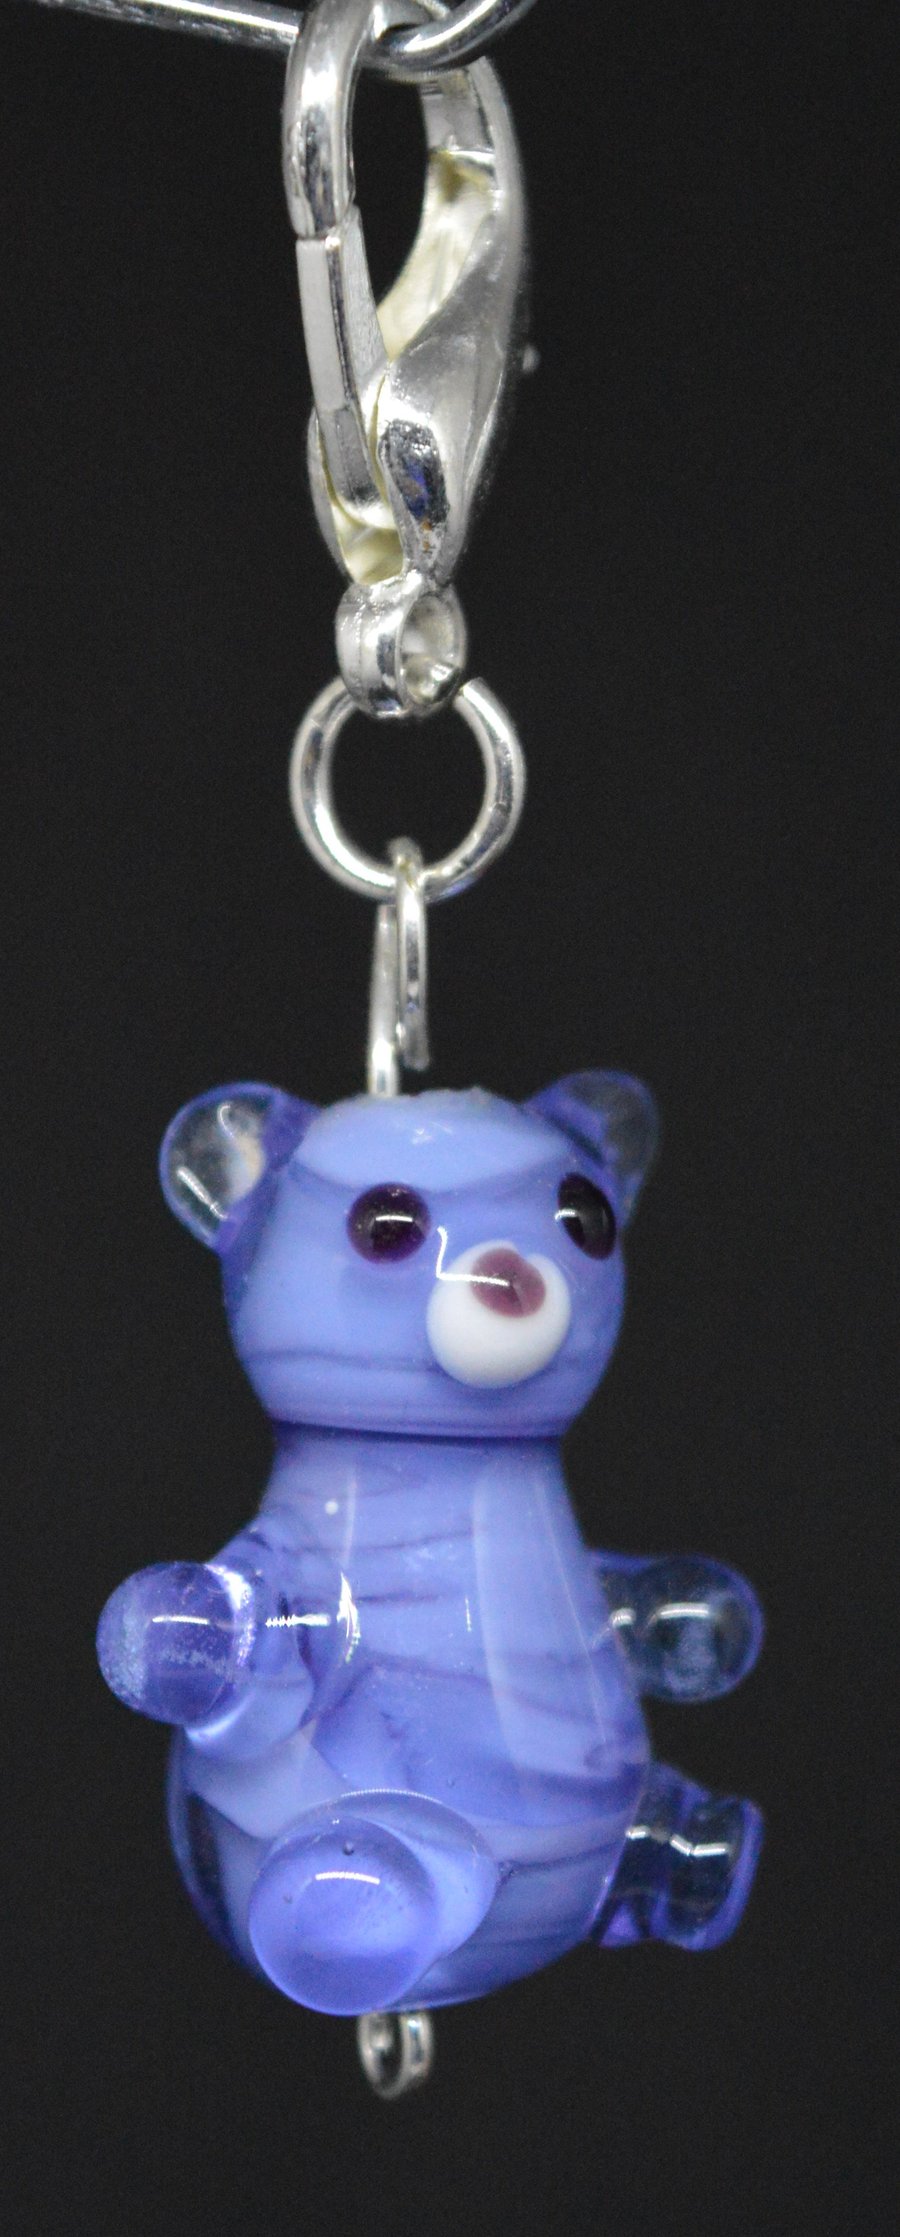 Mid blue teddy bear bag charm